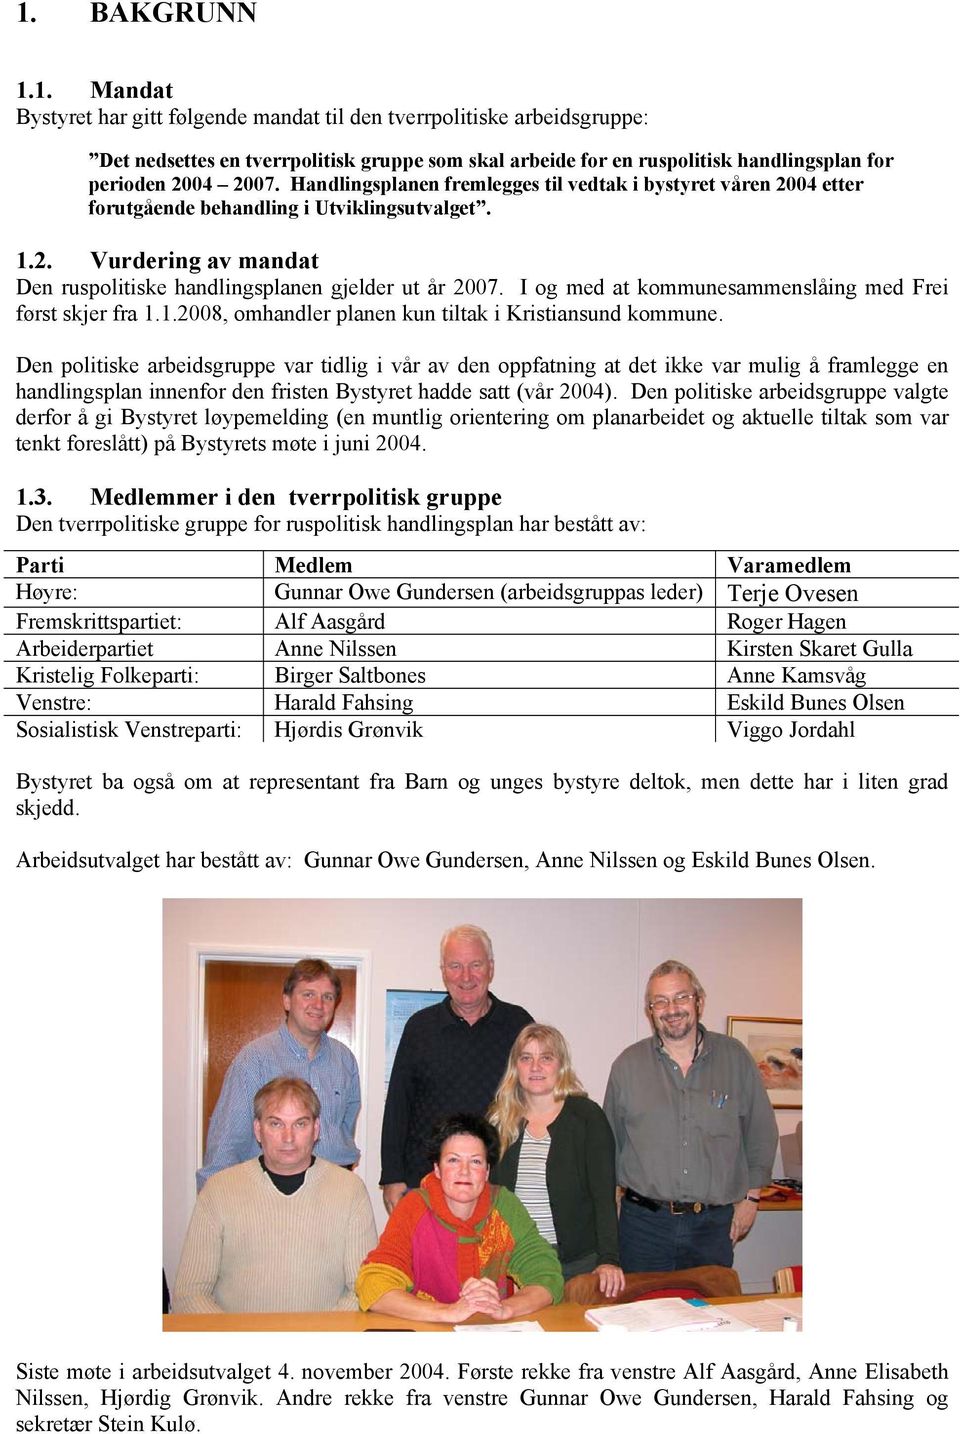 I og med at kommunesammenslåing med Frei først skjer fra 1.1.2008, omhandler planen kun tiltak i Kristiansund kommune.